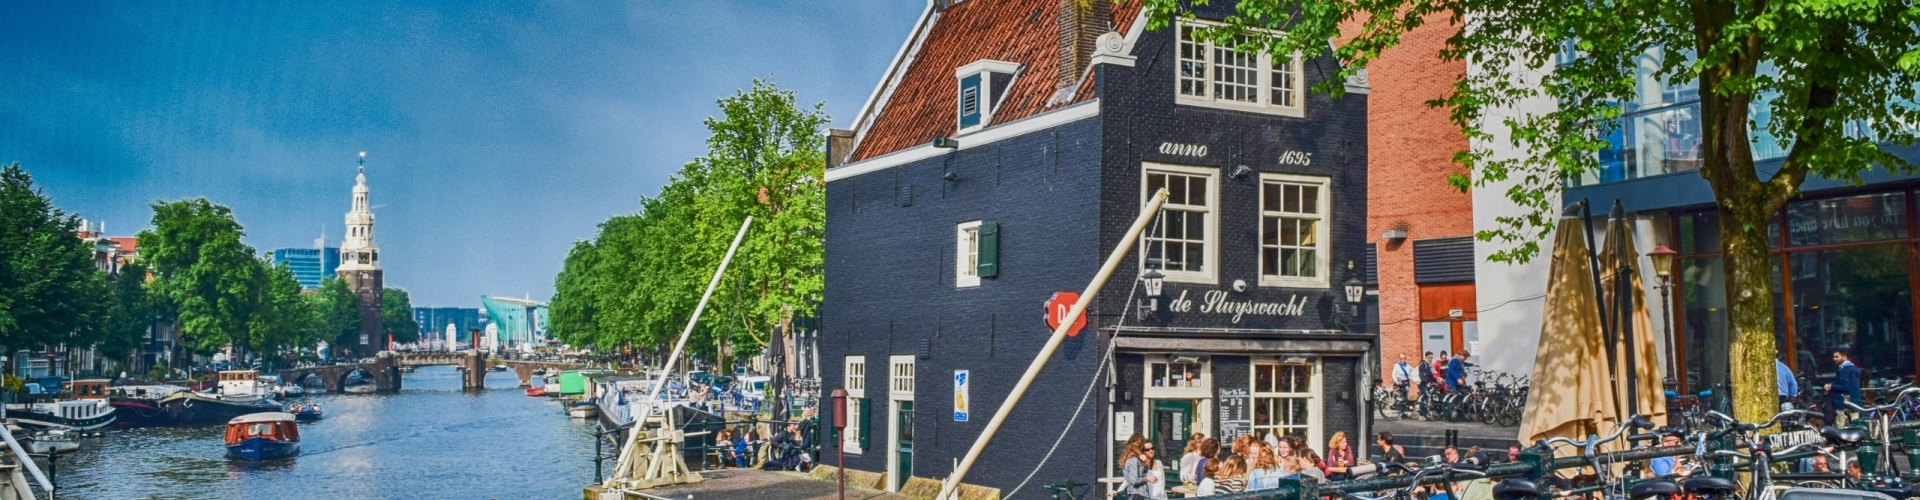 amsterdam-ontdekken-met-een-stadsspel